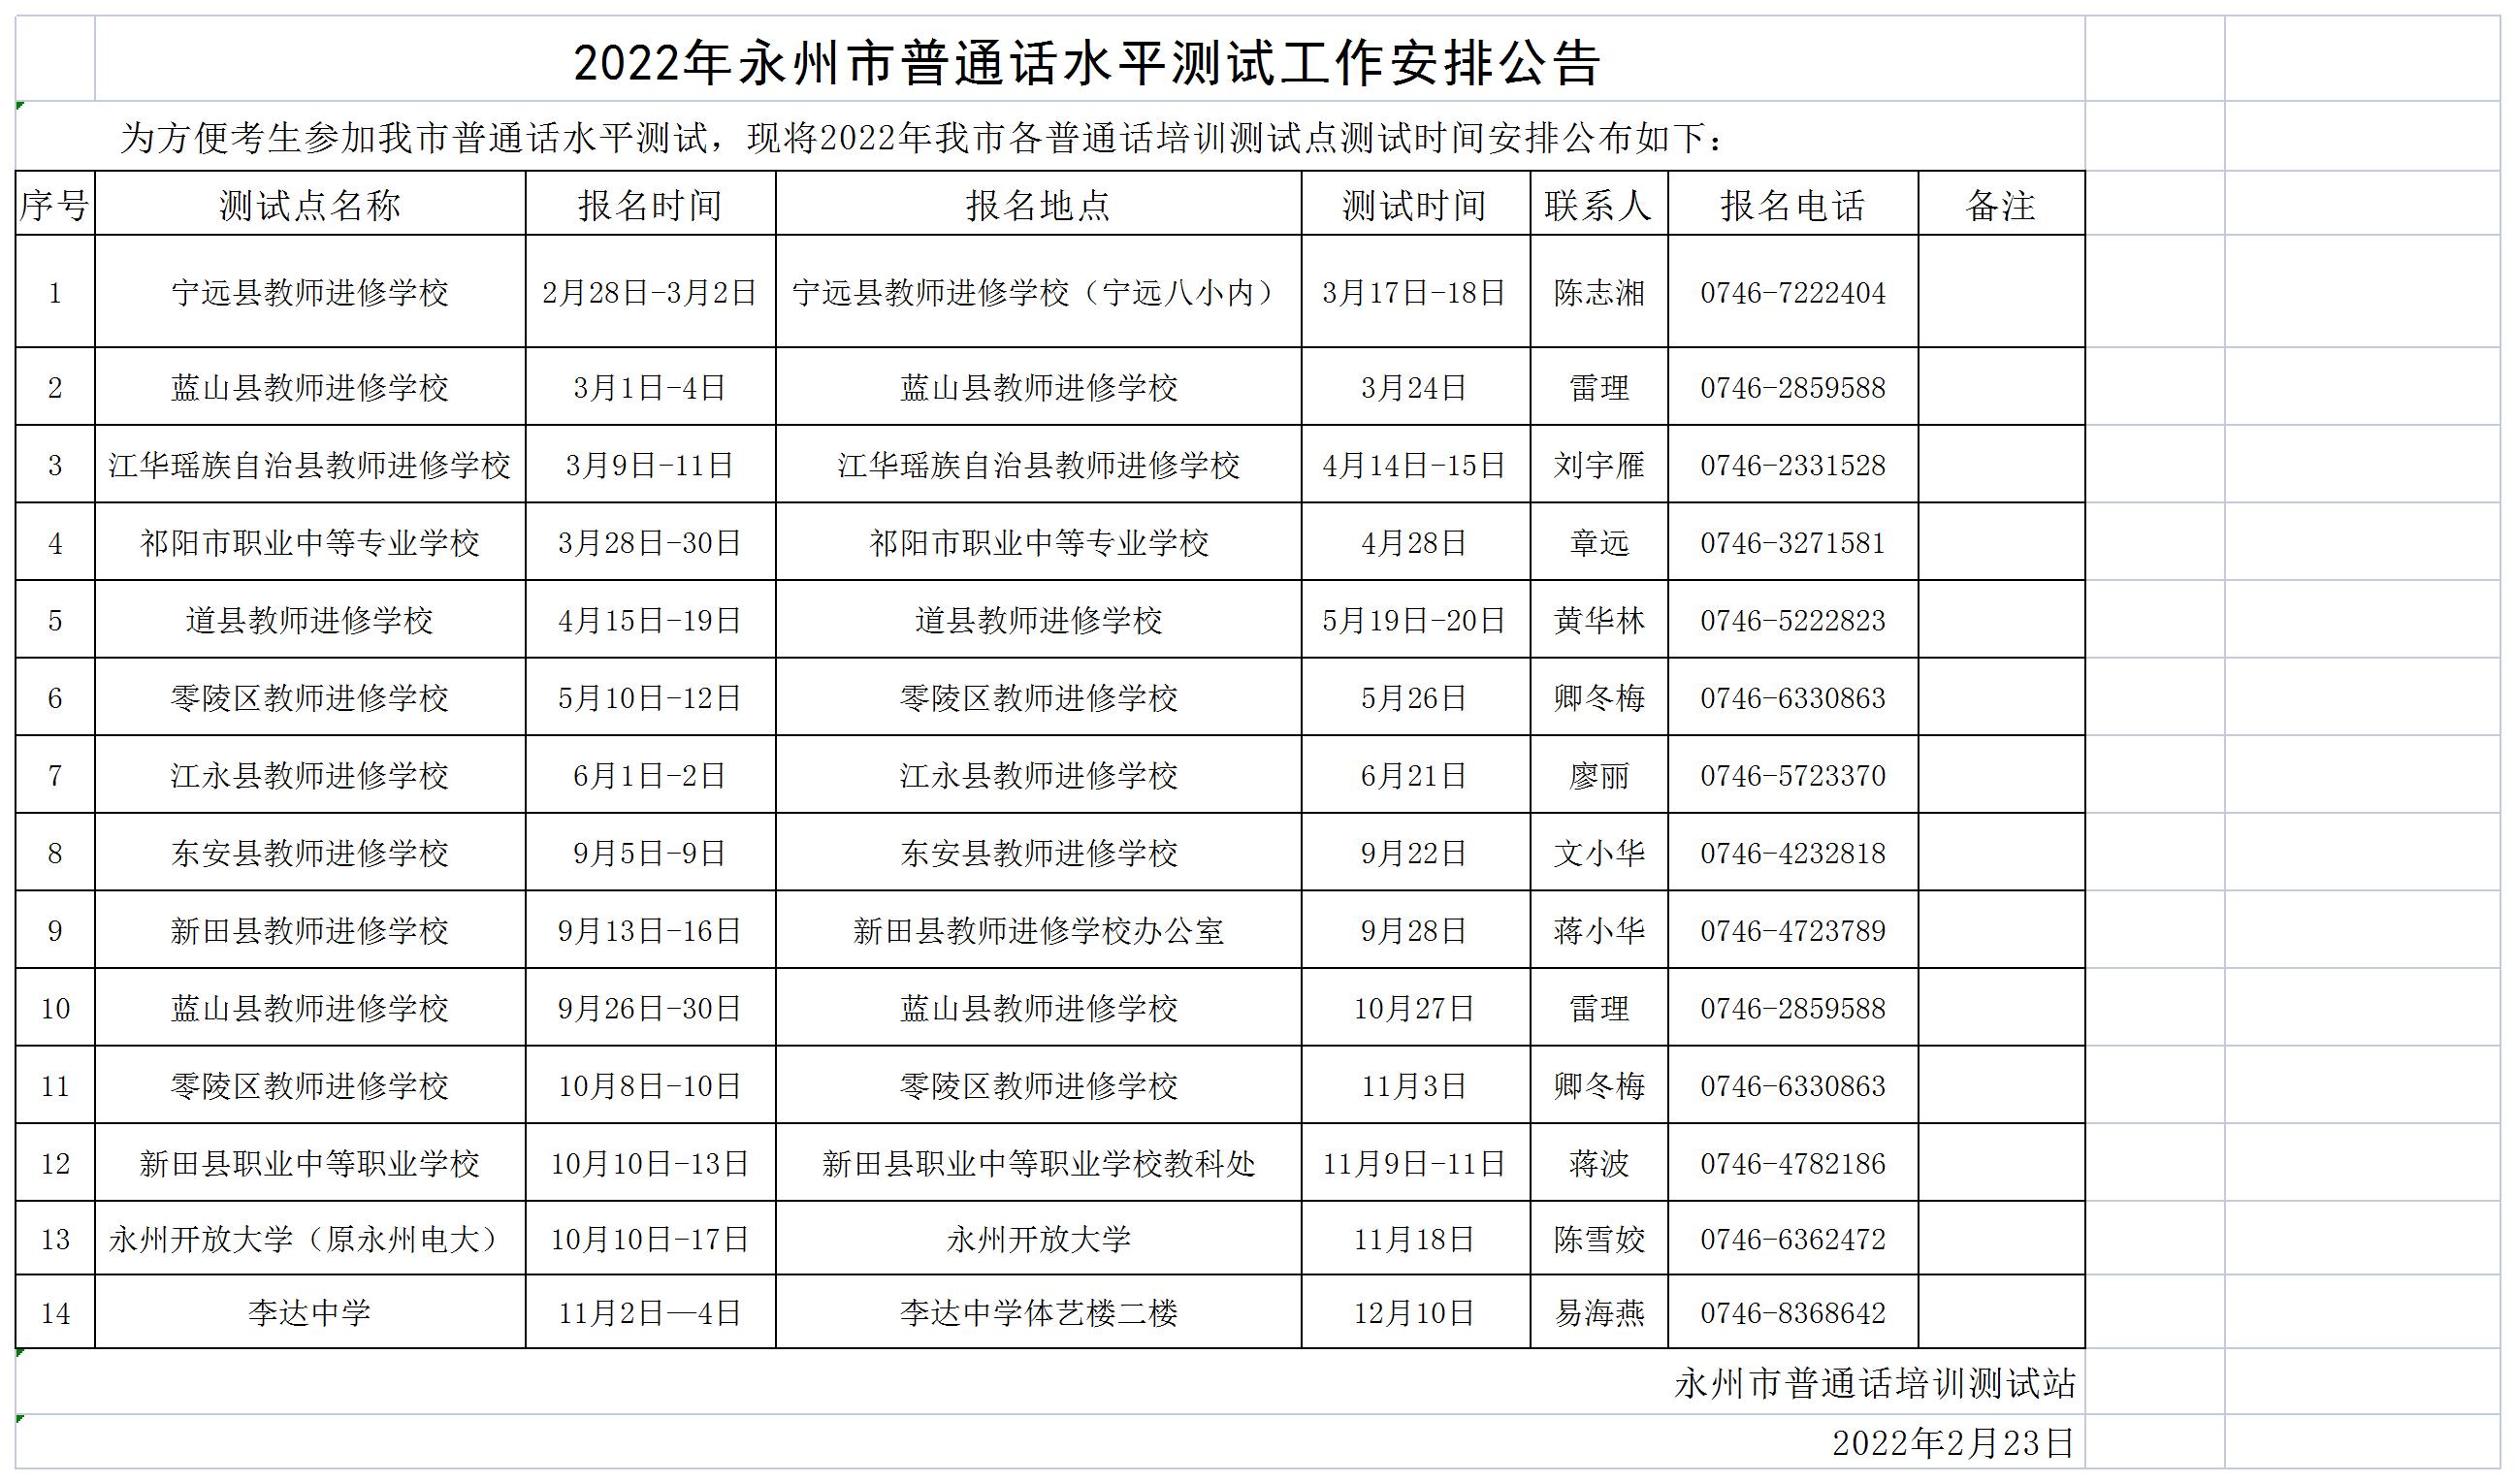 2022年湖南永州市普通话水平测试安排公告.jpg